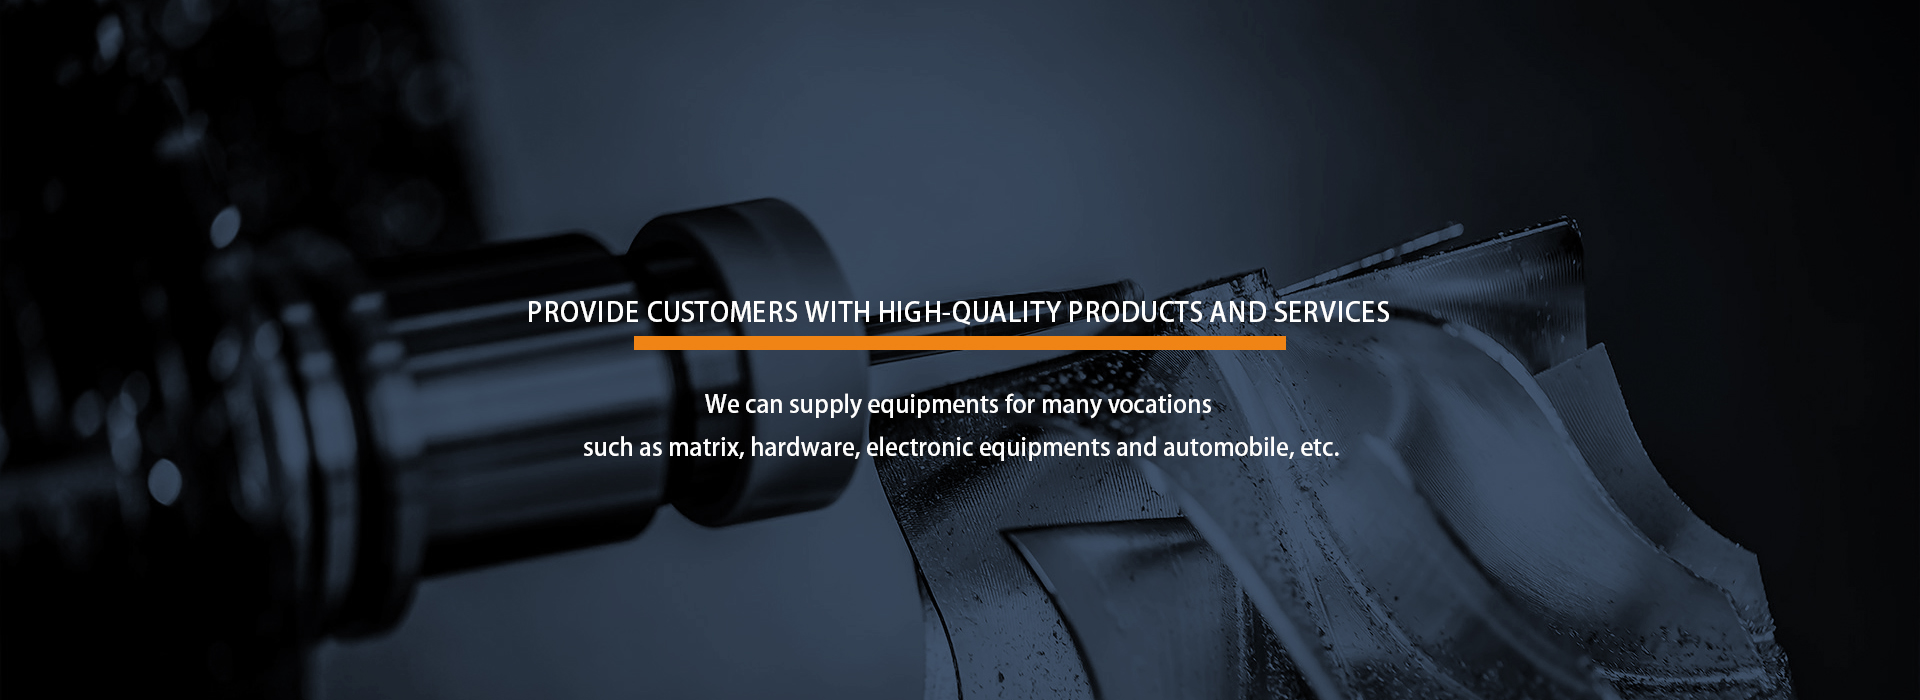 为客户提供优质的产品和服务